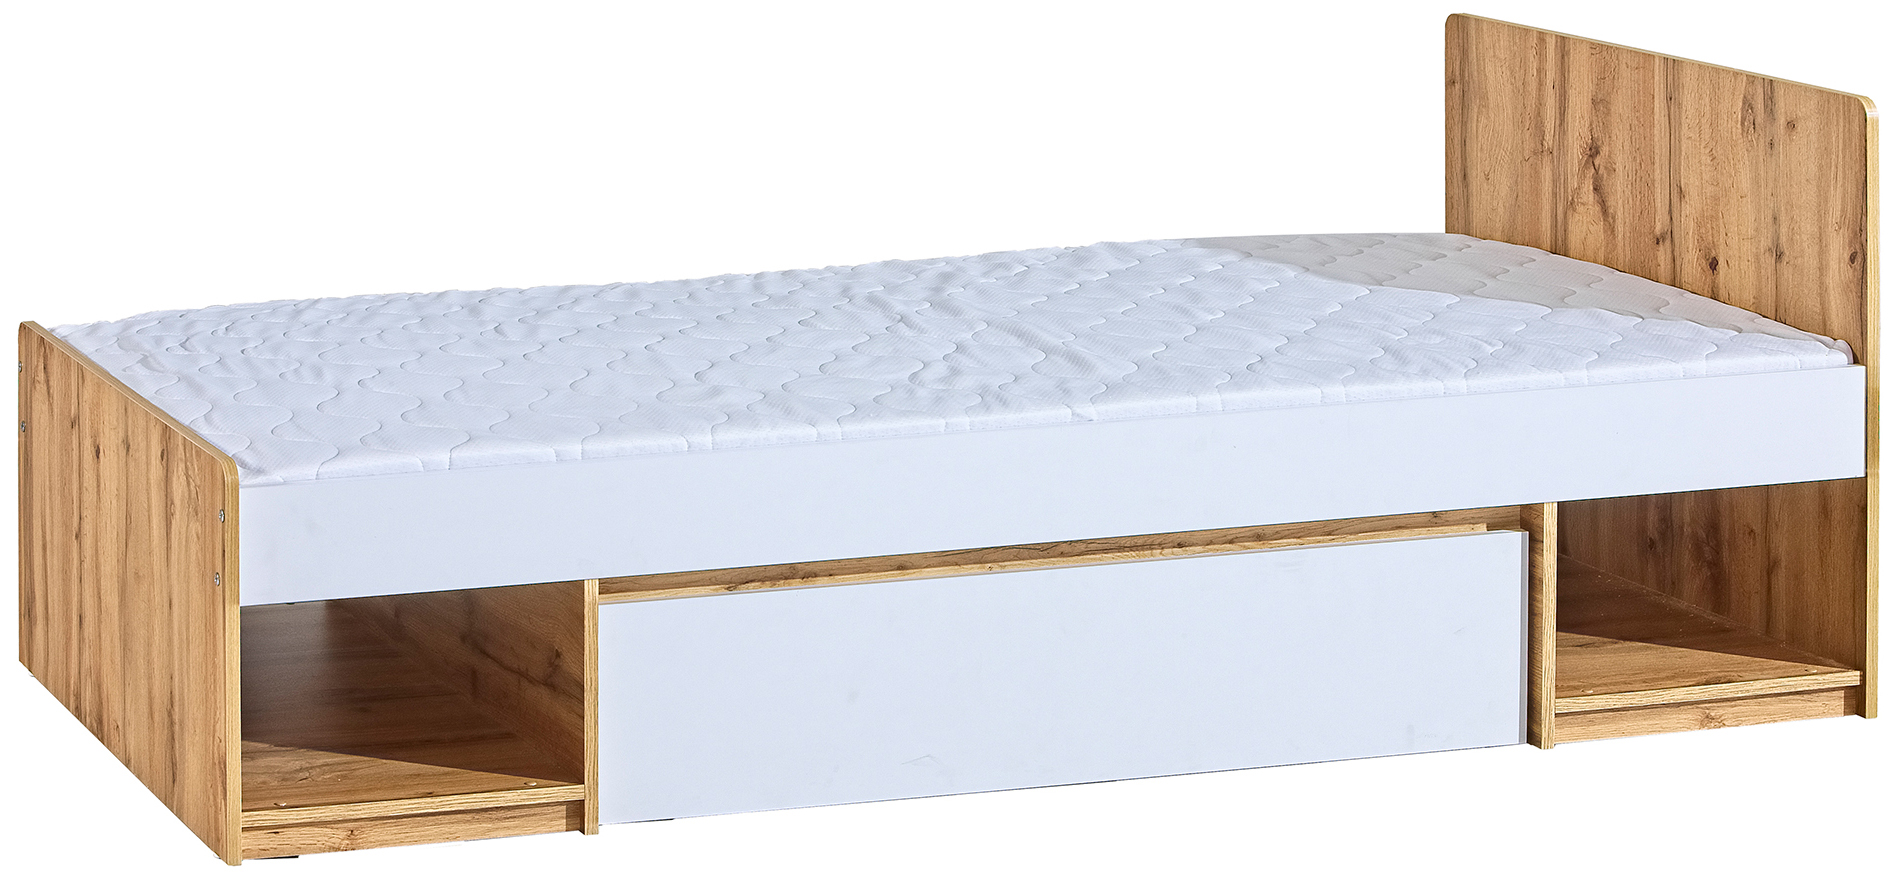 Dětská postel s roštem a úložným šuplíkem bílá / dub Artica